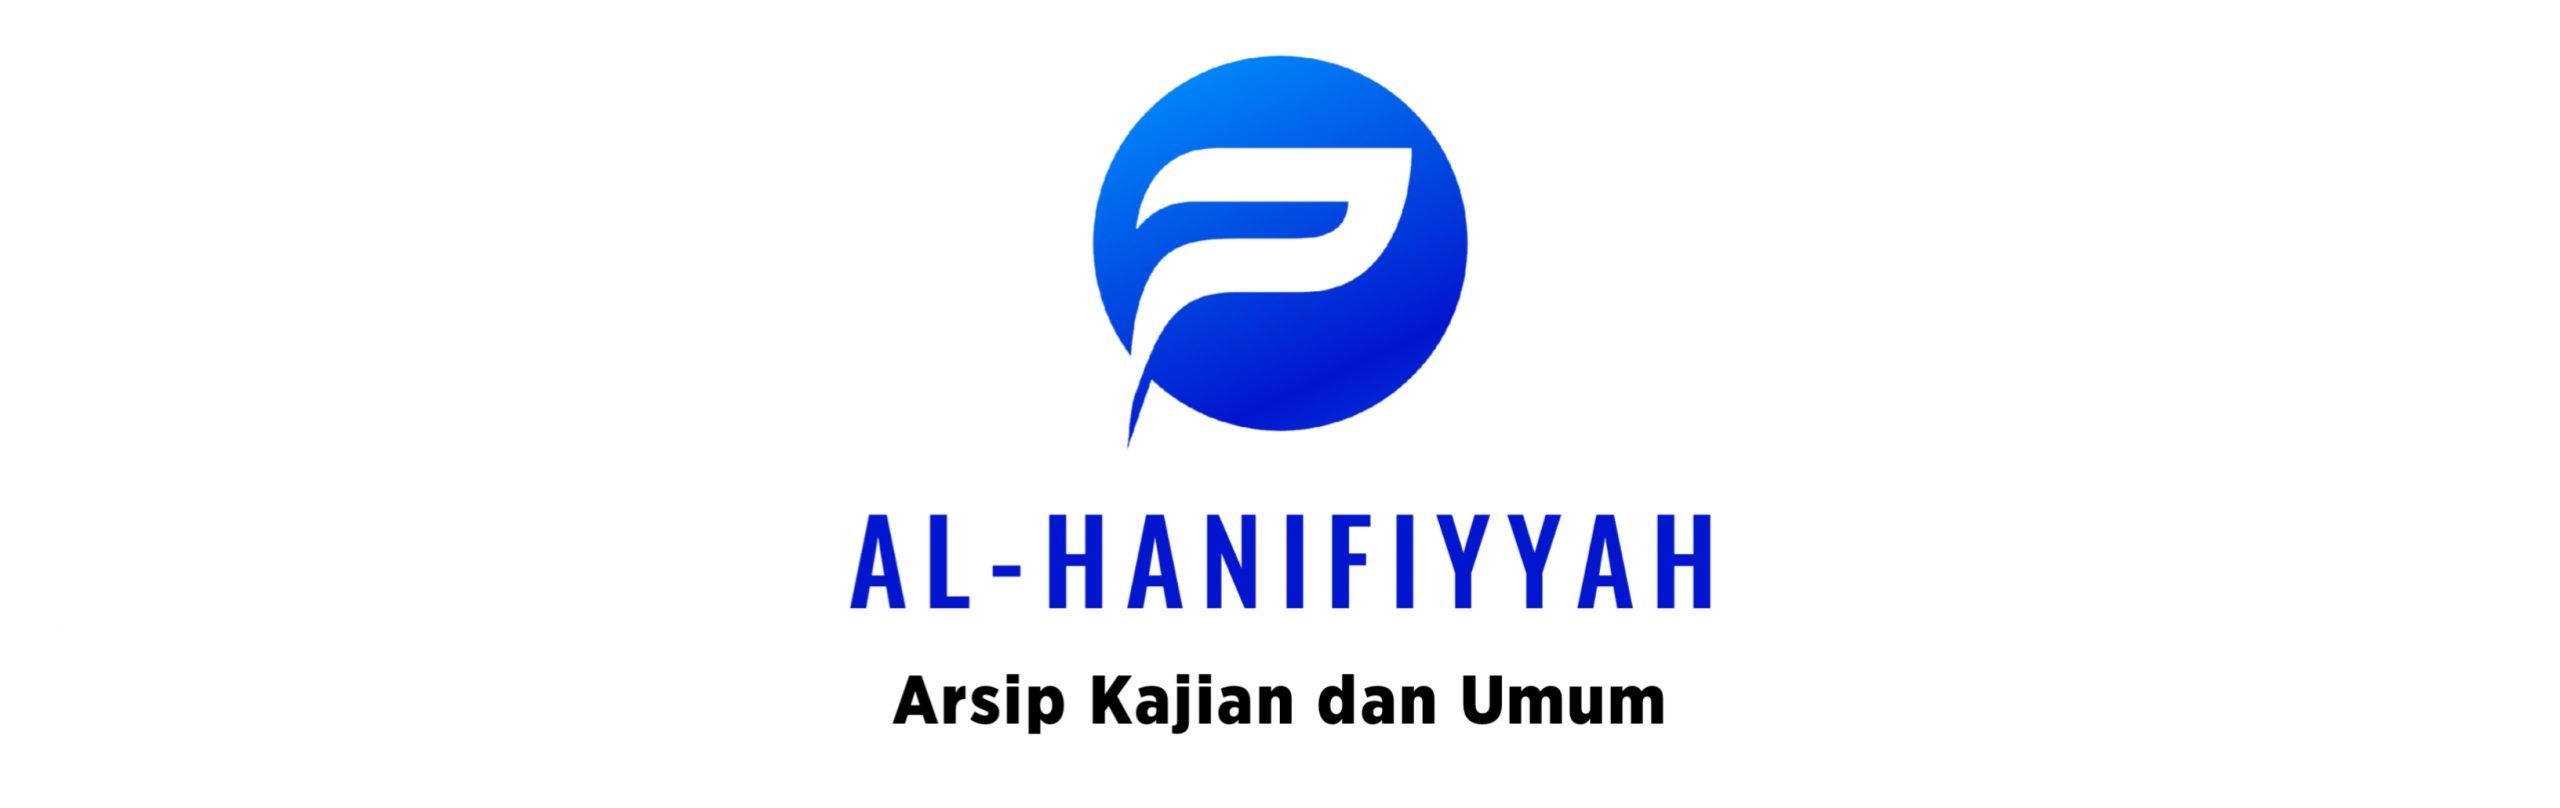 AL-HANIFIYYAH